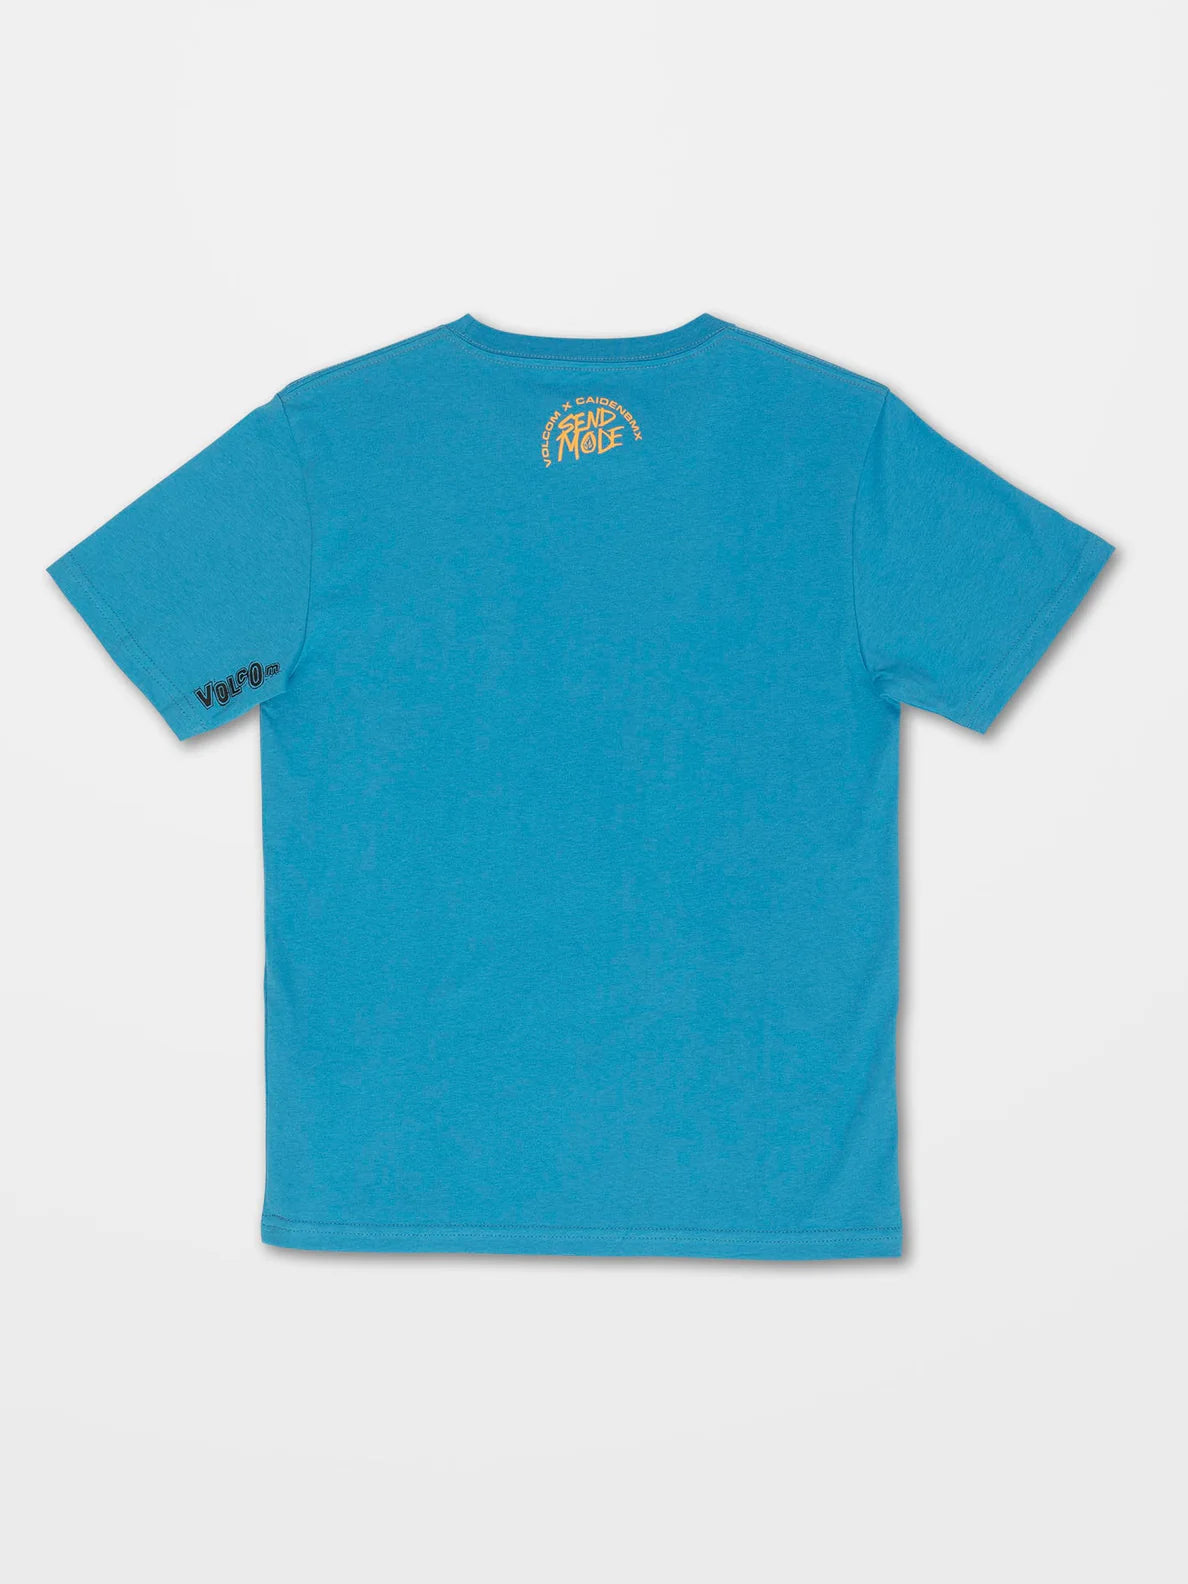 Camiseta niño Volcom Skele Flip Blue Drift | Camisetas de niño | Volcom Shop | surfdevils.com